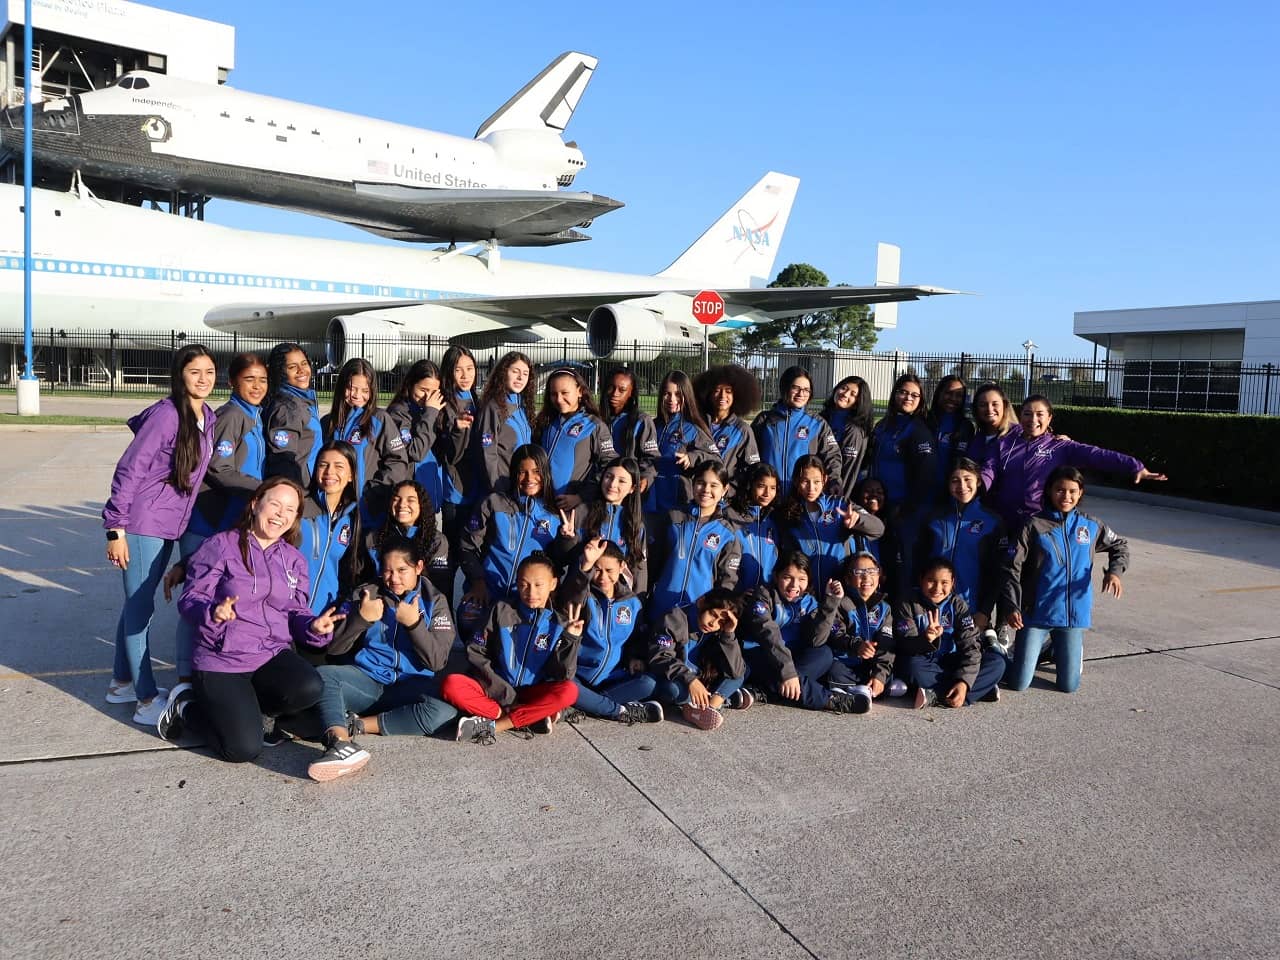 Diez niñas y adolescentes de zonas vulnerables viajarán a la NASA